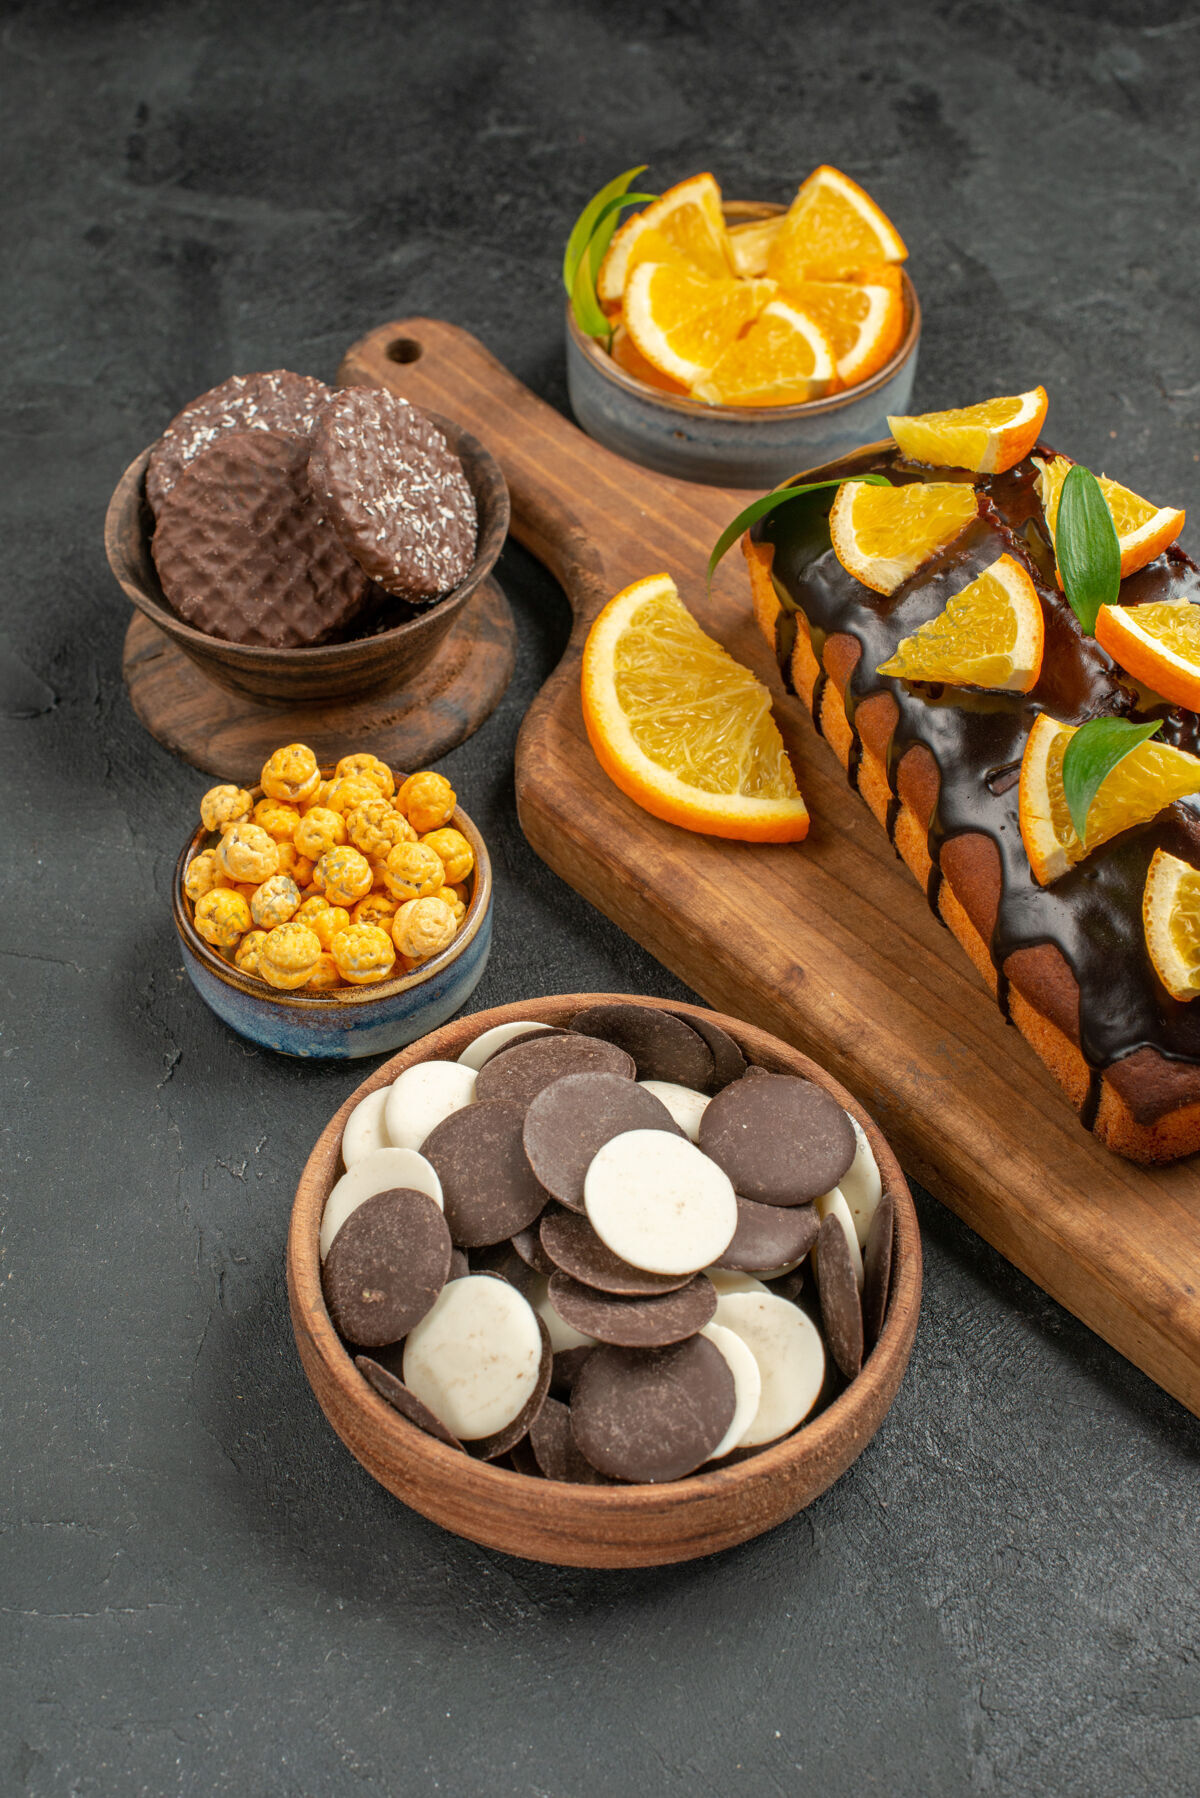 饼干美味蛋糕的侧视图切橘子和饼干放在深色桌子的砧板上水果美食切